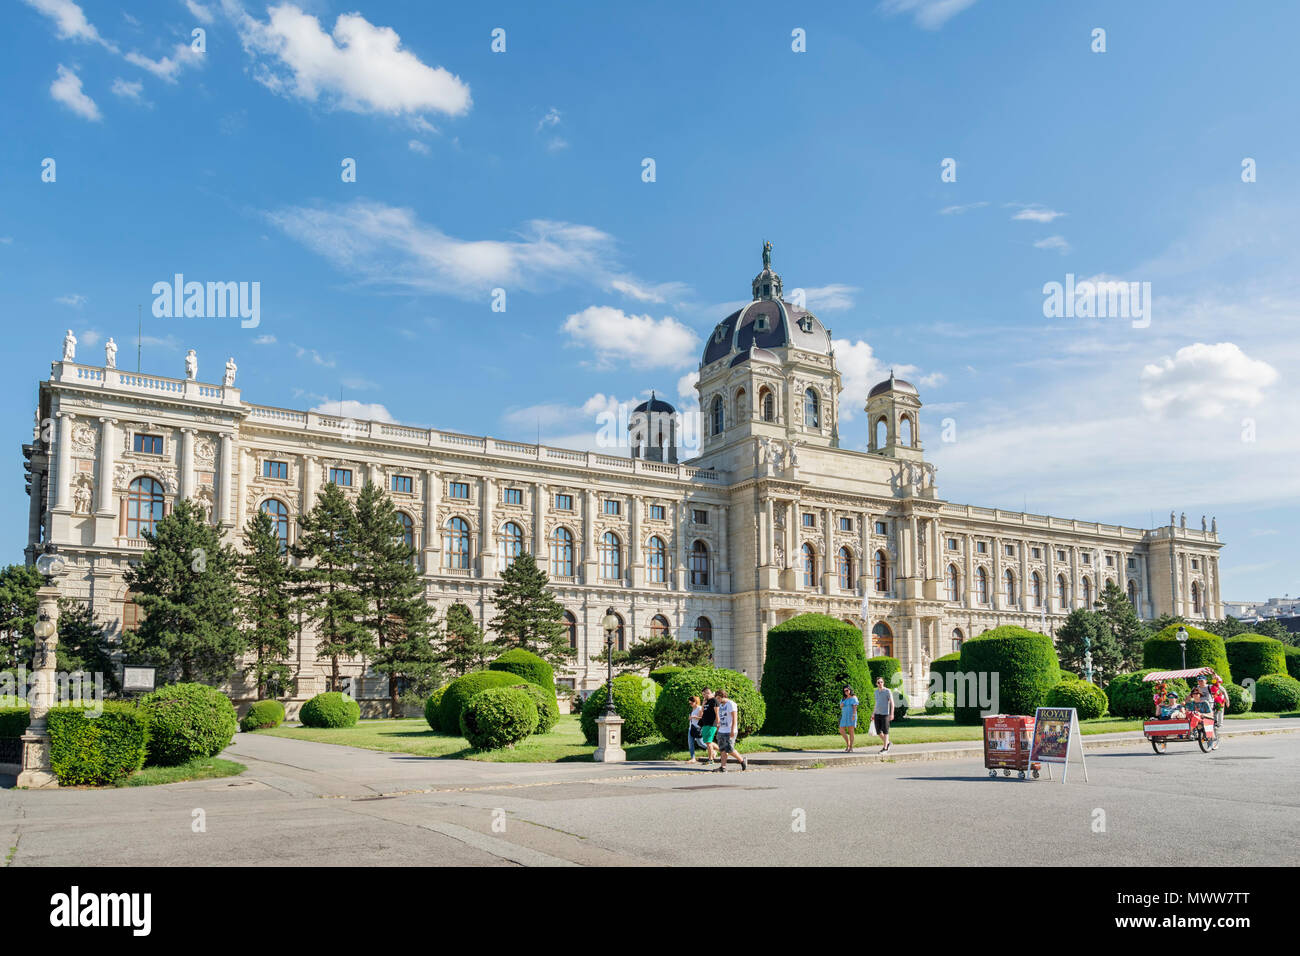 Vienne, Autriche, Juillet 1,2016 : extérieur tourné de Kunsthistorisches Museum (Musée d'histoire de l'Art), logé dans son palais, de fête sur Ringstrasse. Banque D'Images